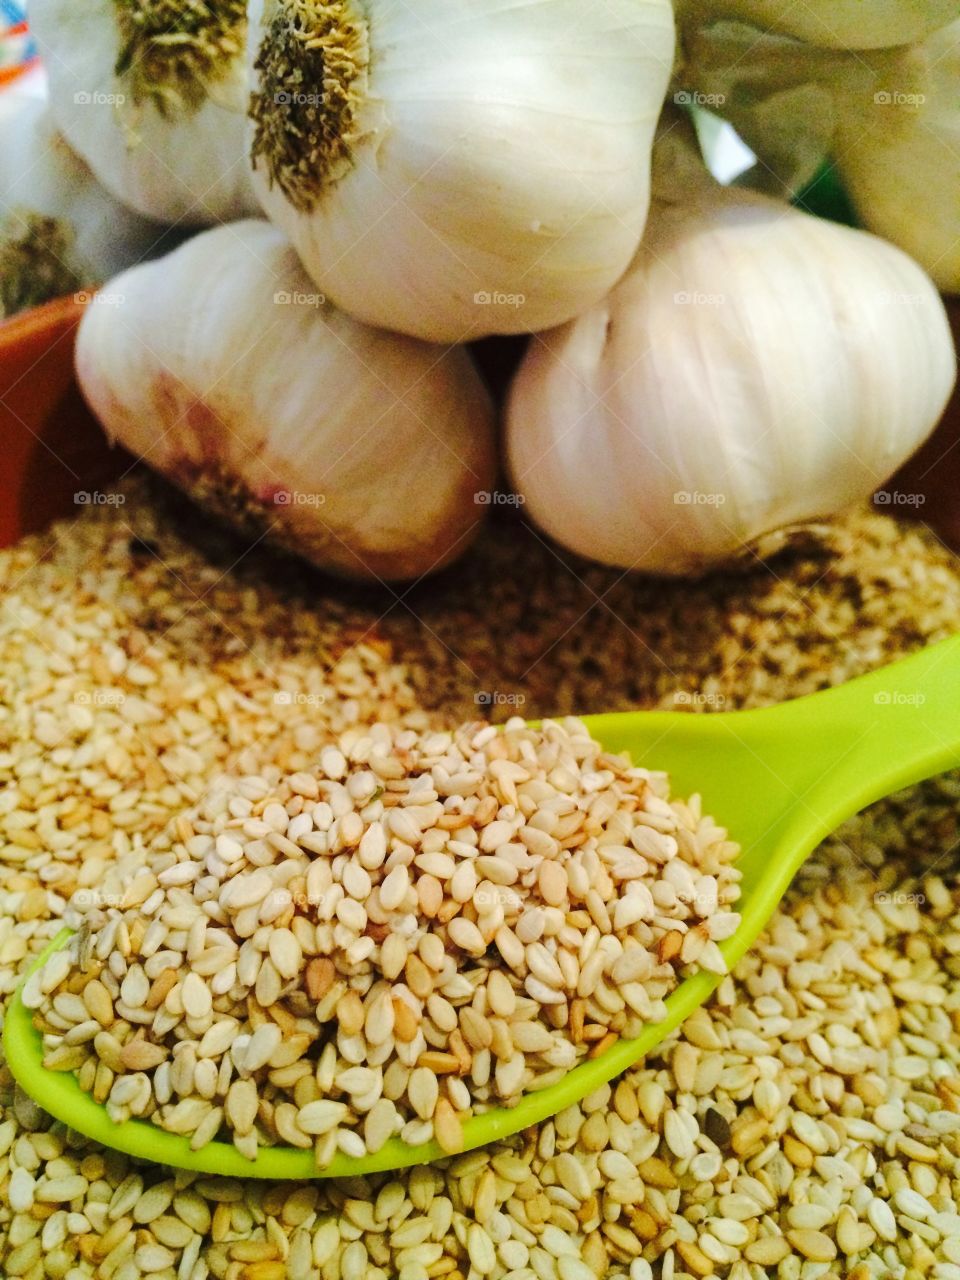 Sunflower seeds with garlic